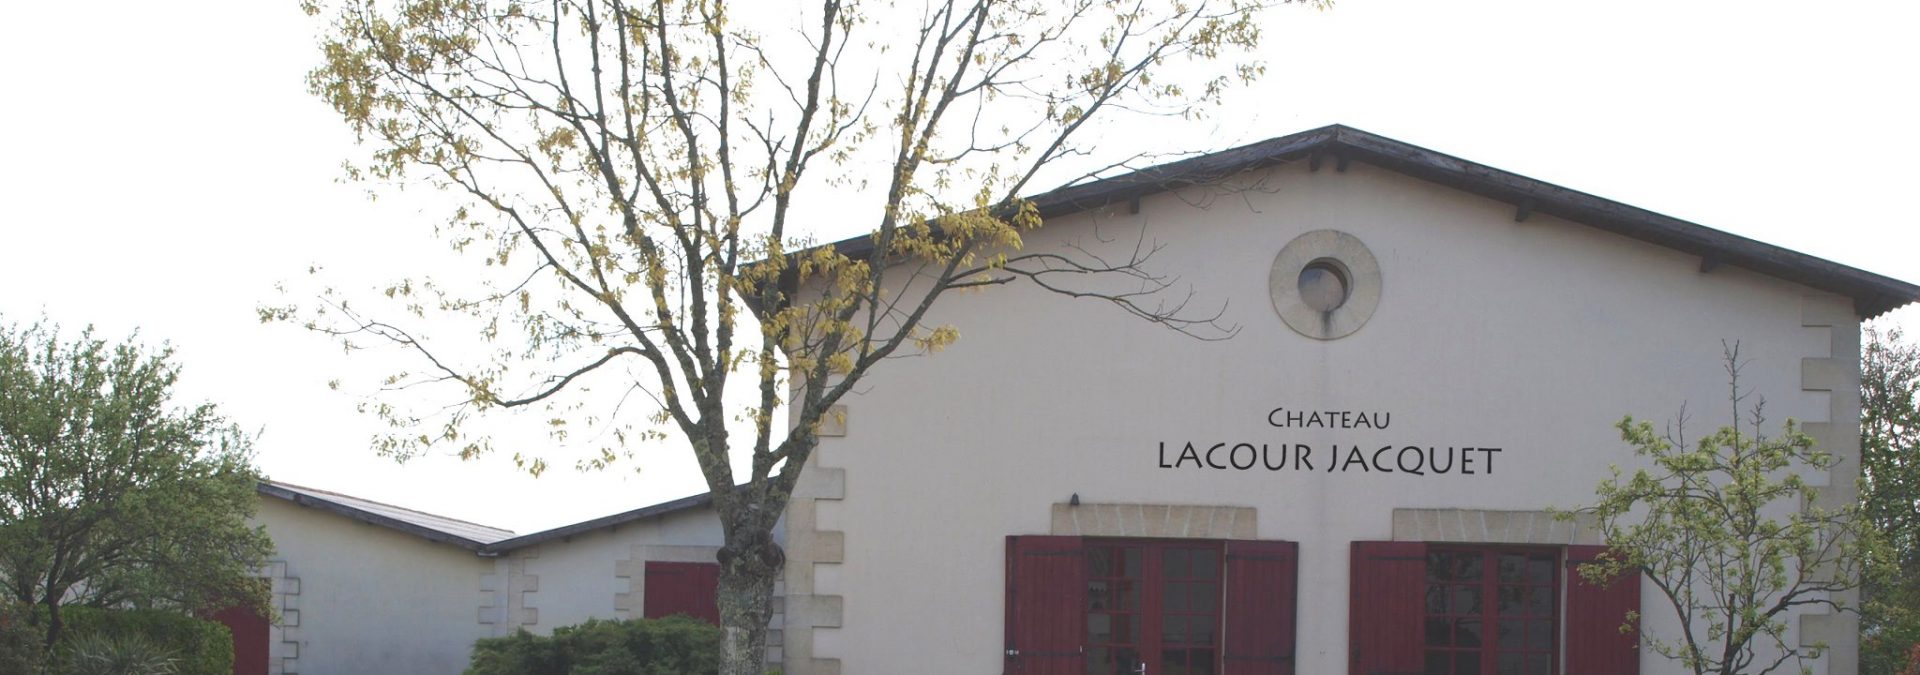 Chateau Lacour Jacquet